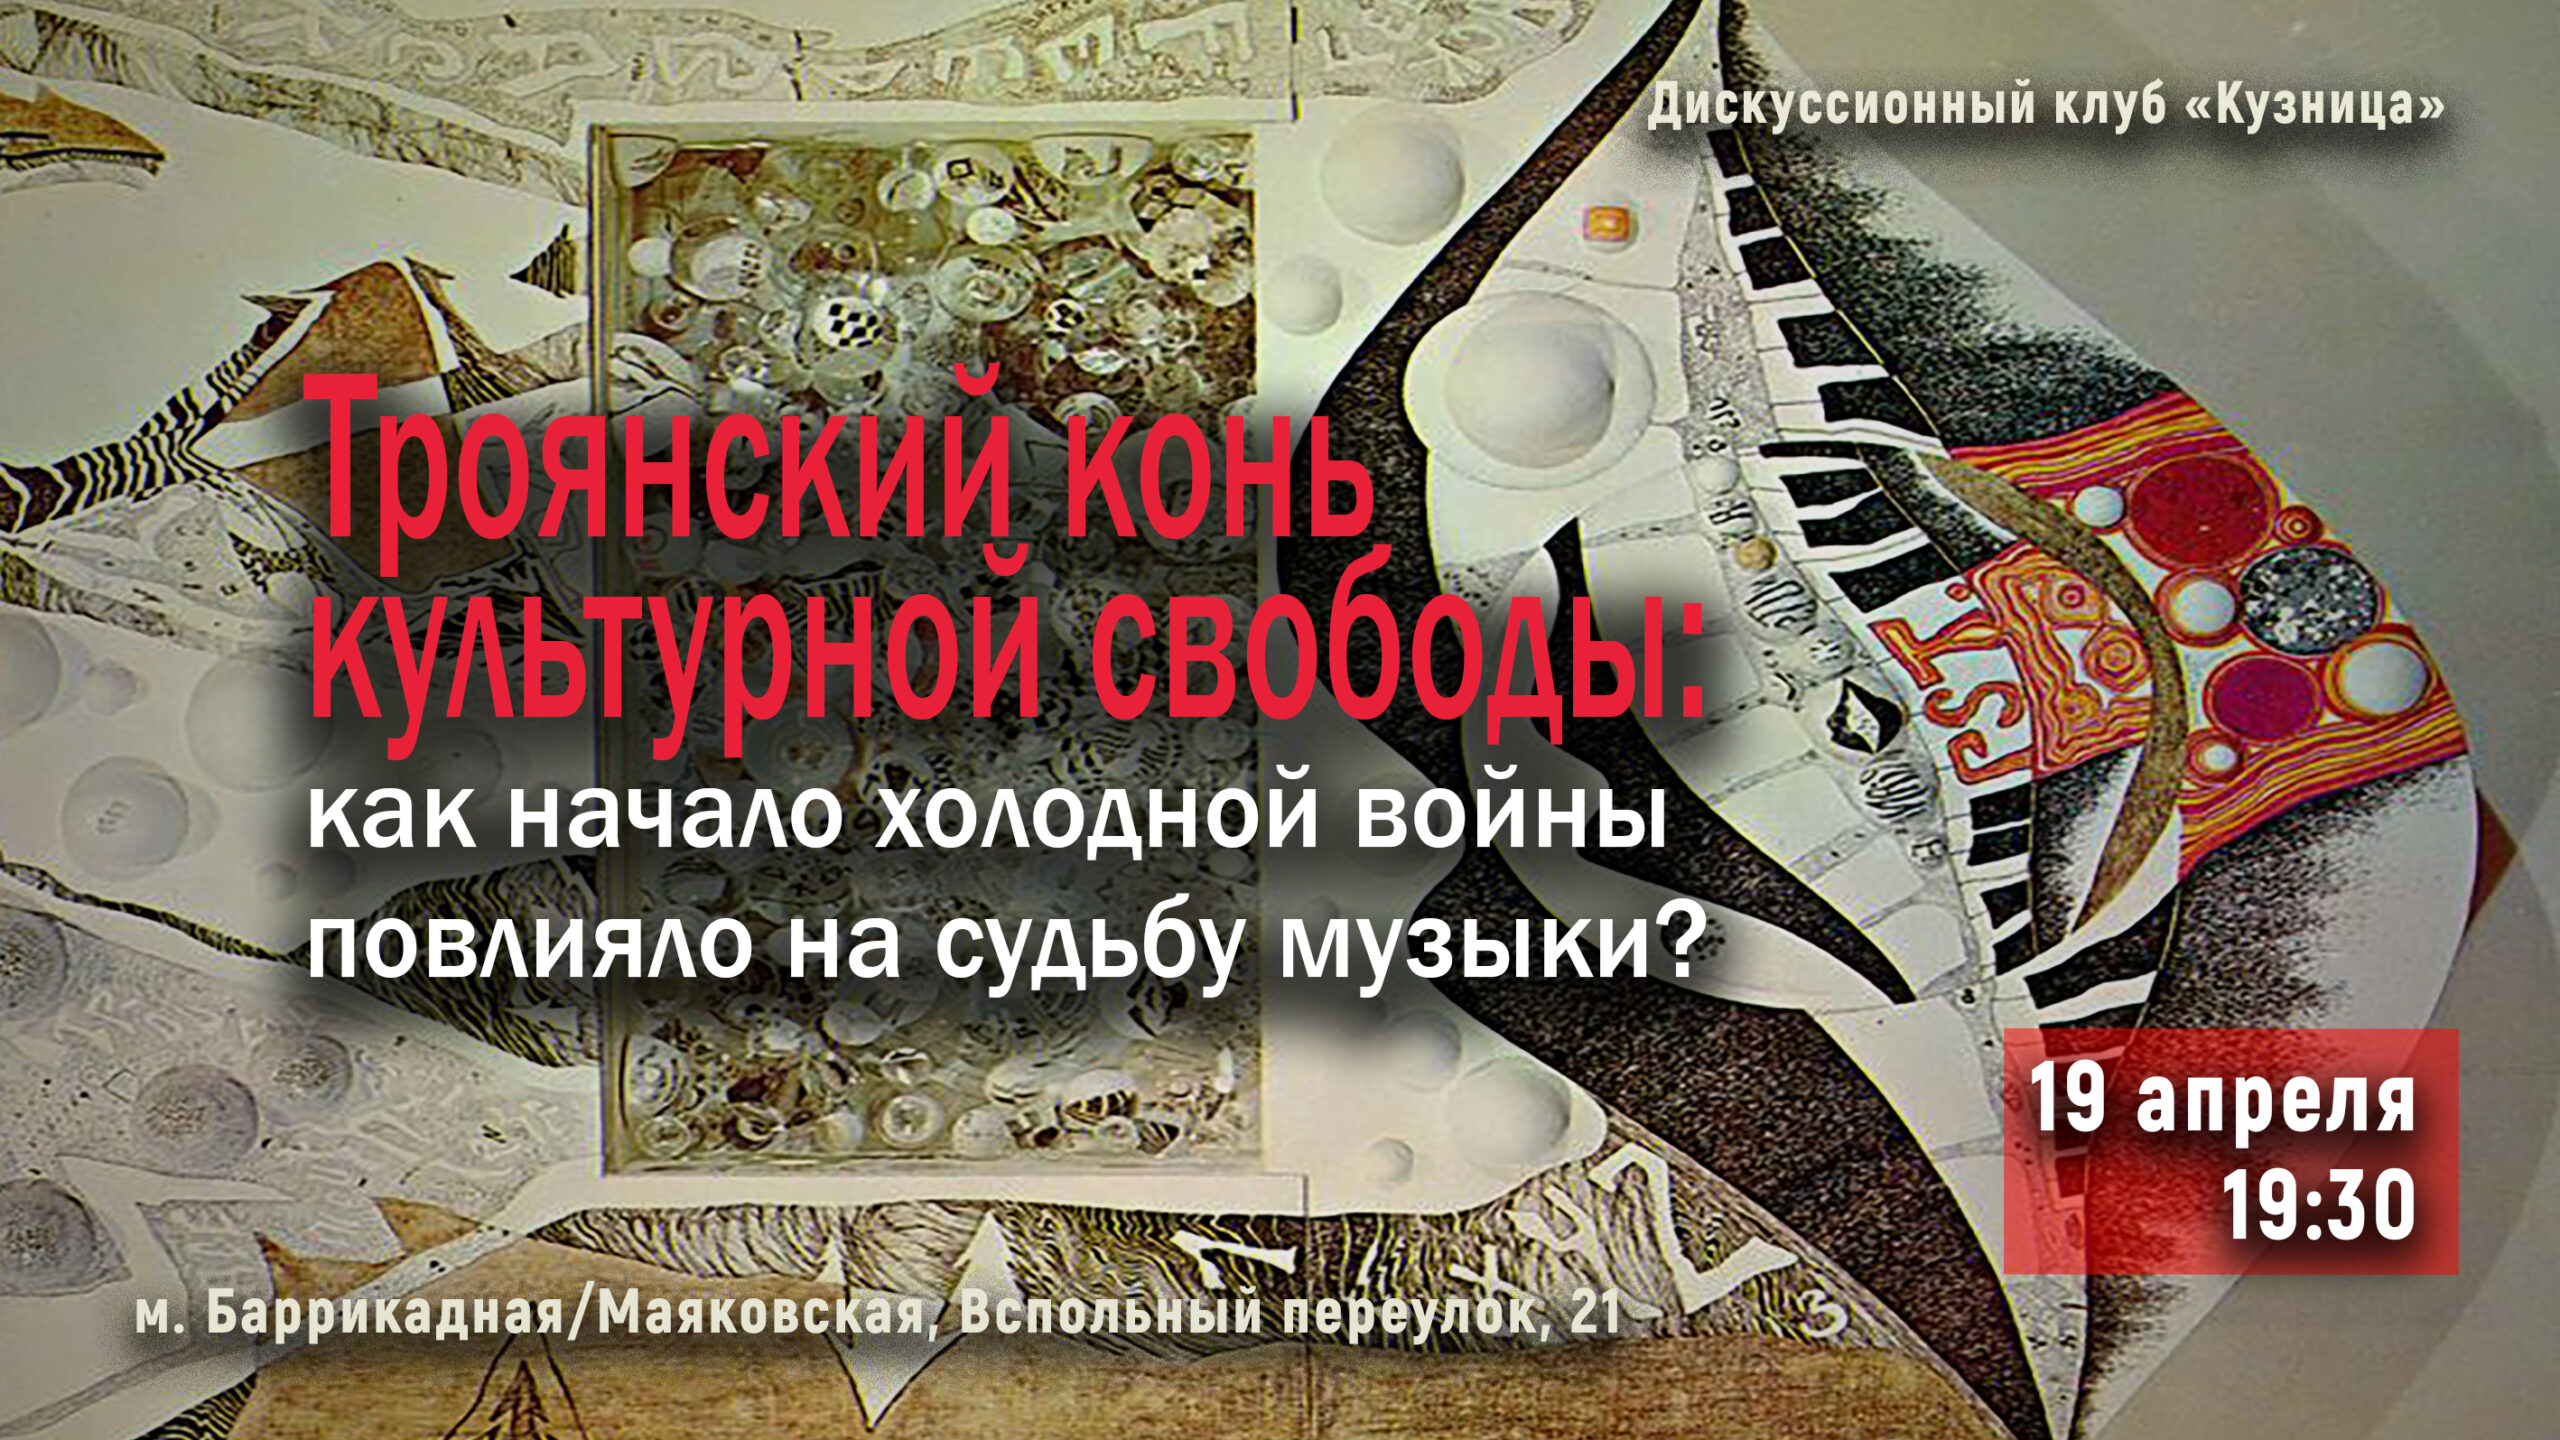 «Троянский конь культурной свободы: как начало холодной войны повлияло на судьбу музыки?»